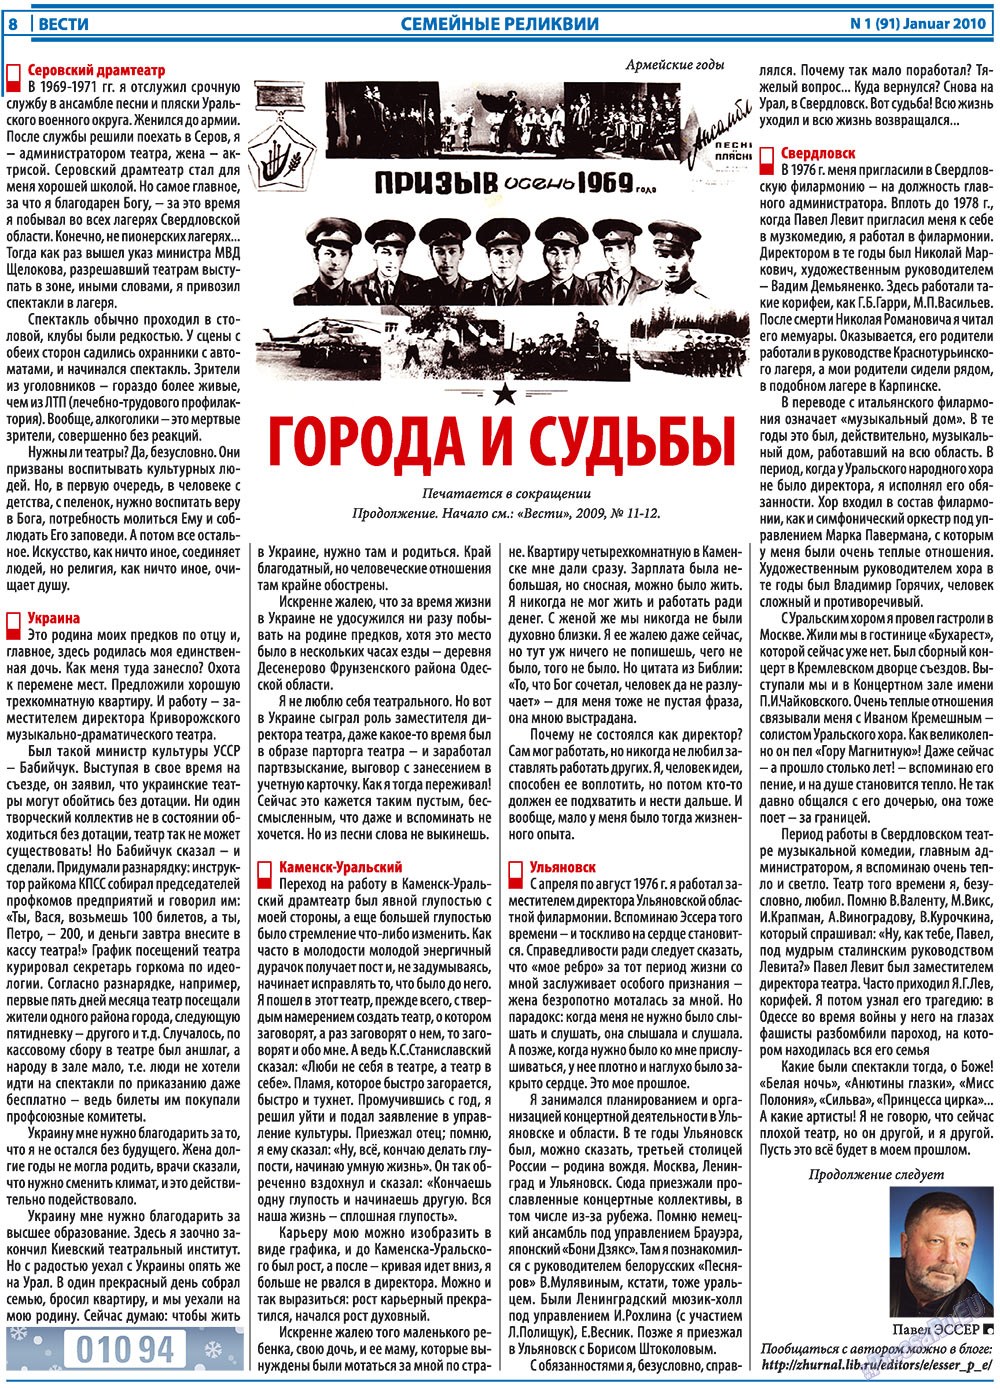 Вести, газета. 2010 №1 стр.8